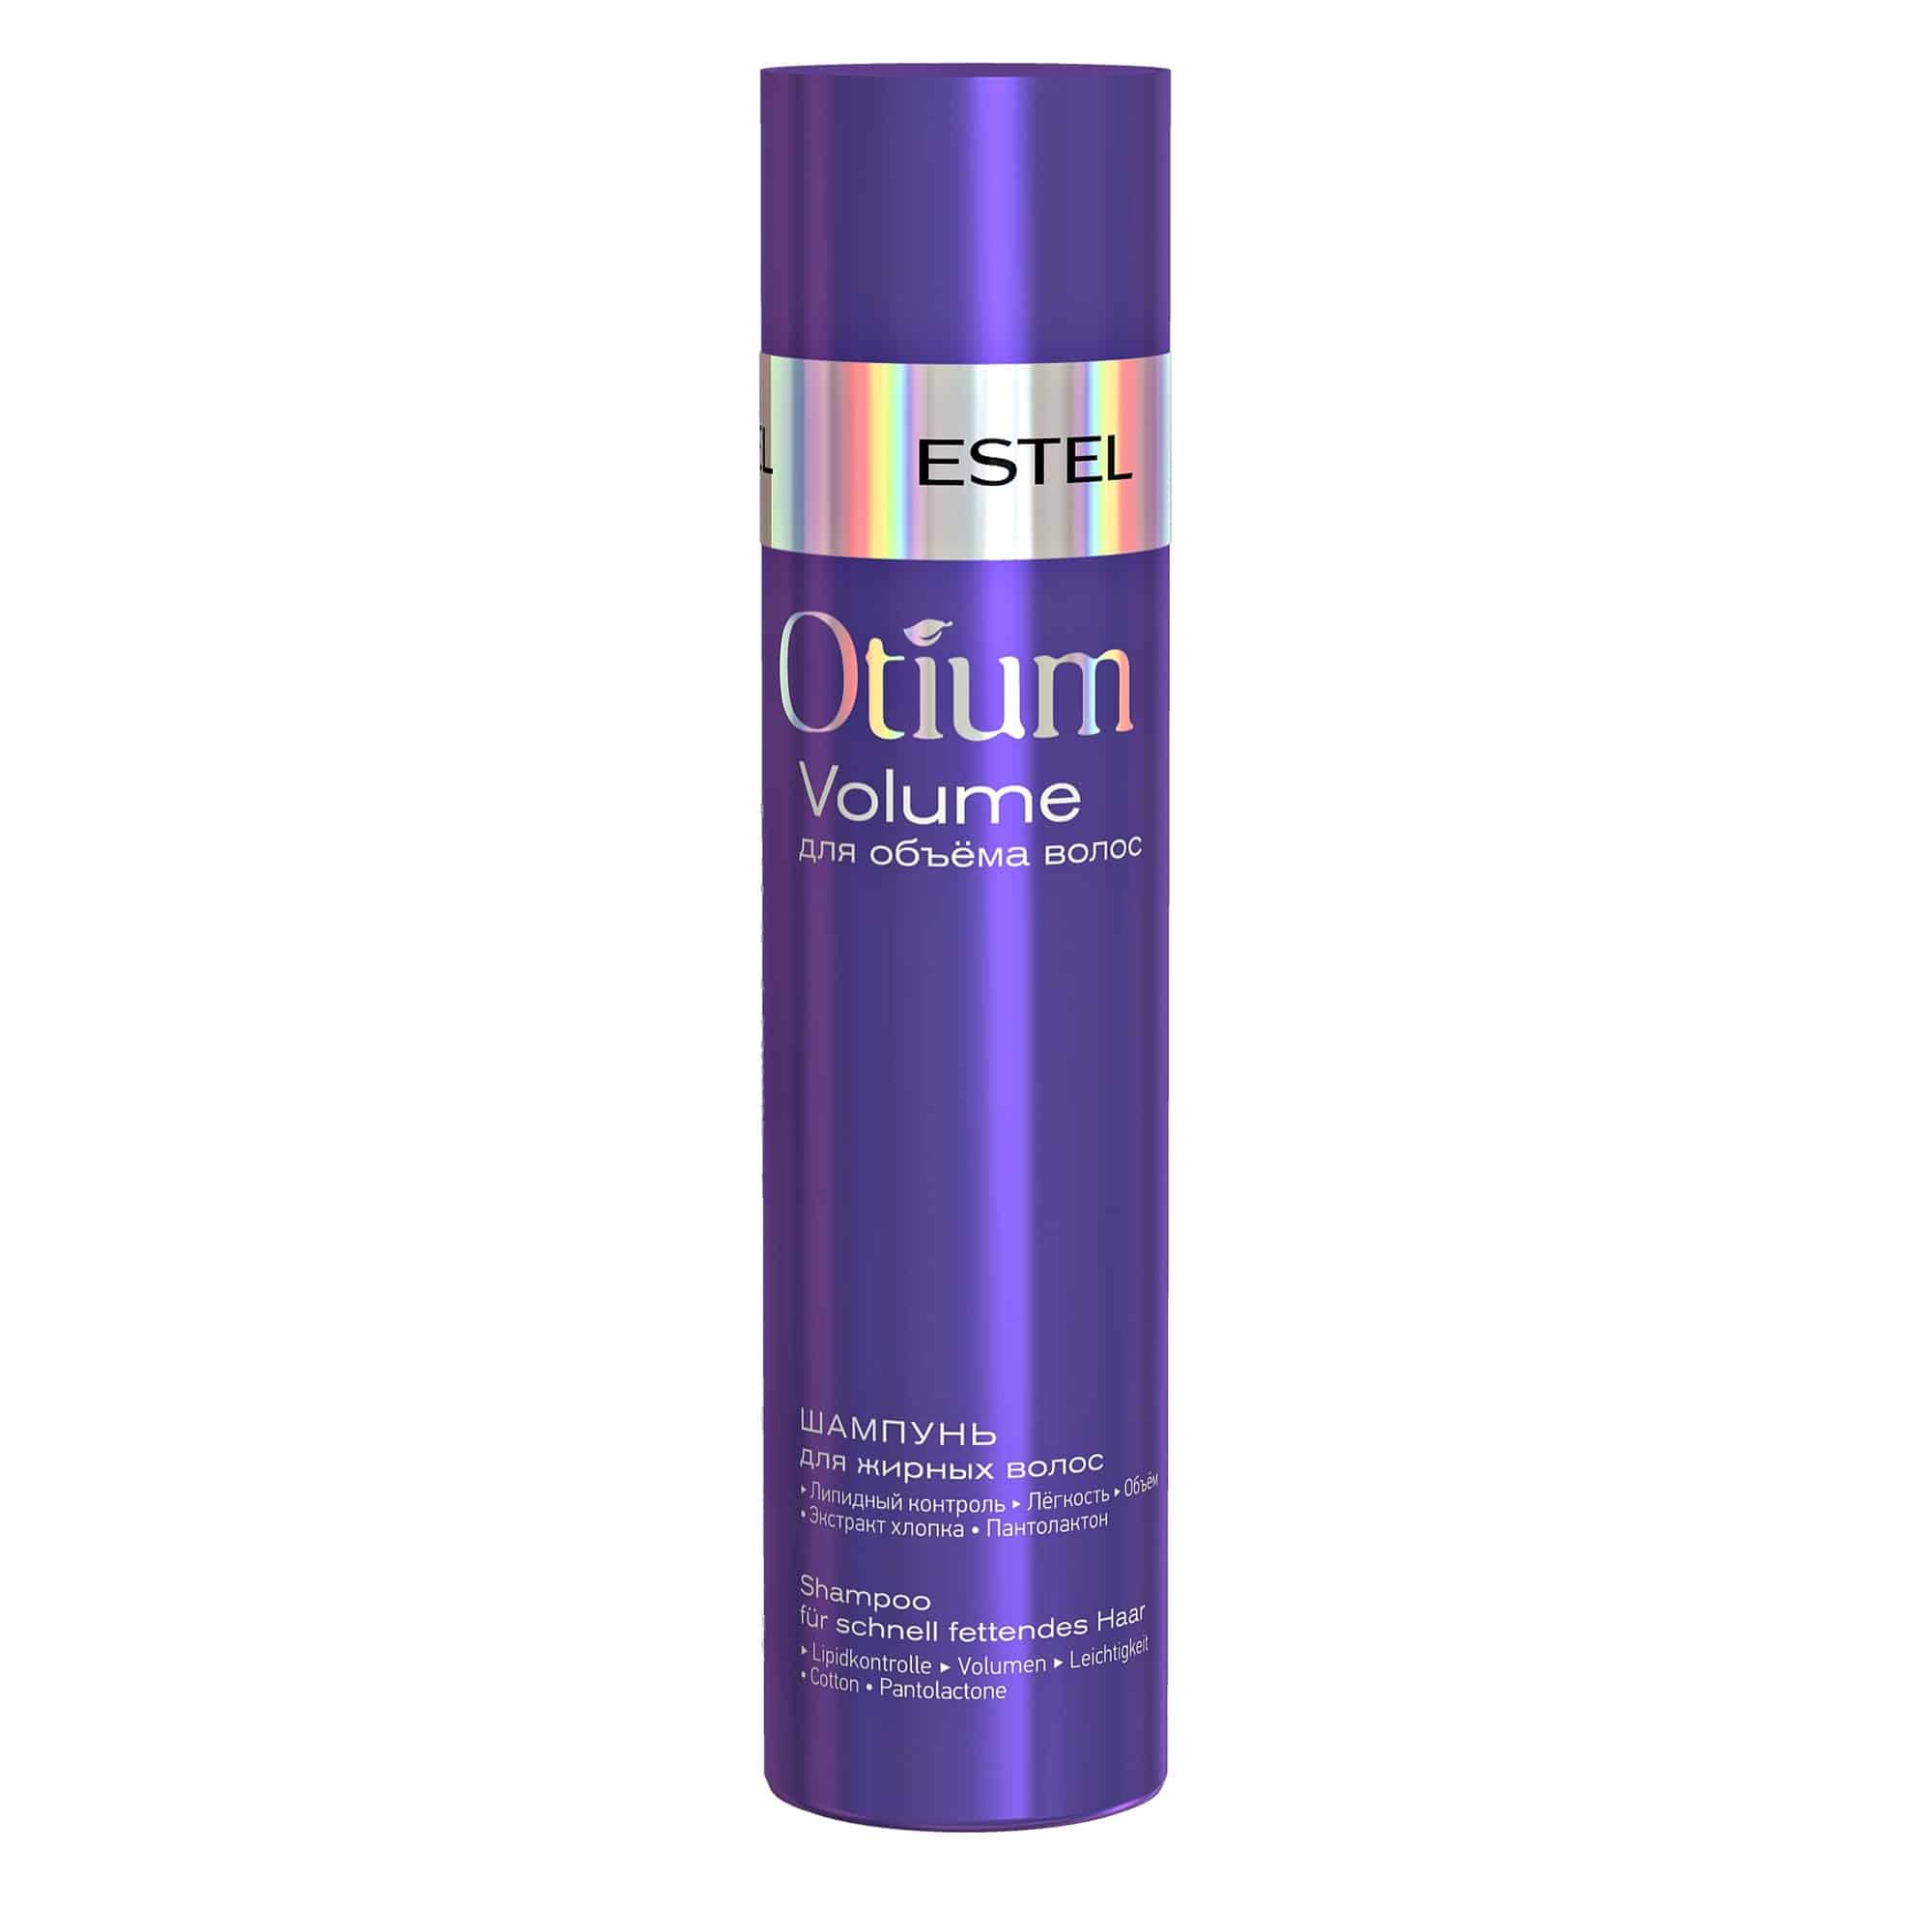 OTIUM VOLUME Shampoo für schnell fettendes Haar von ESTEL